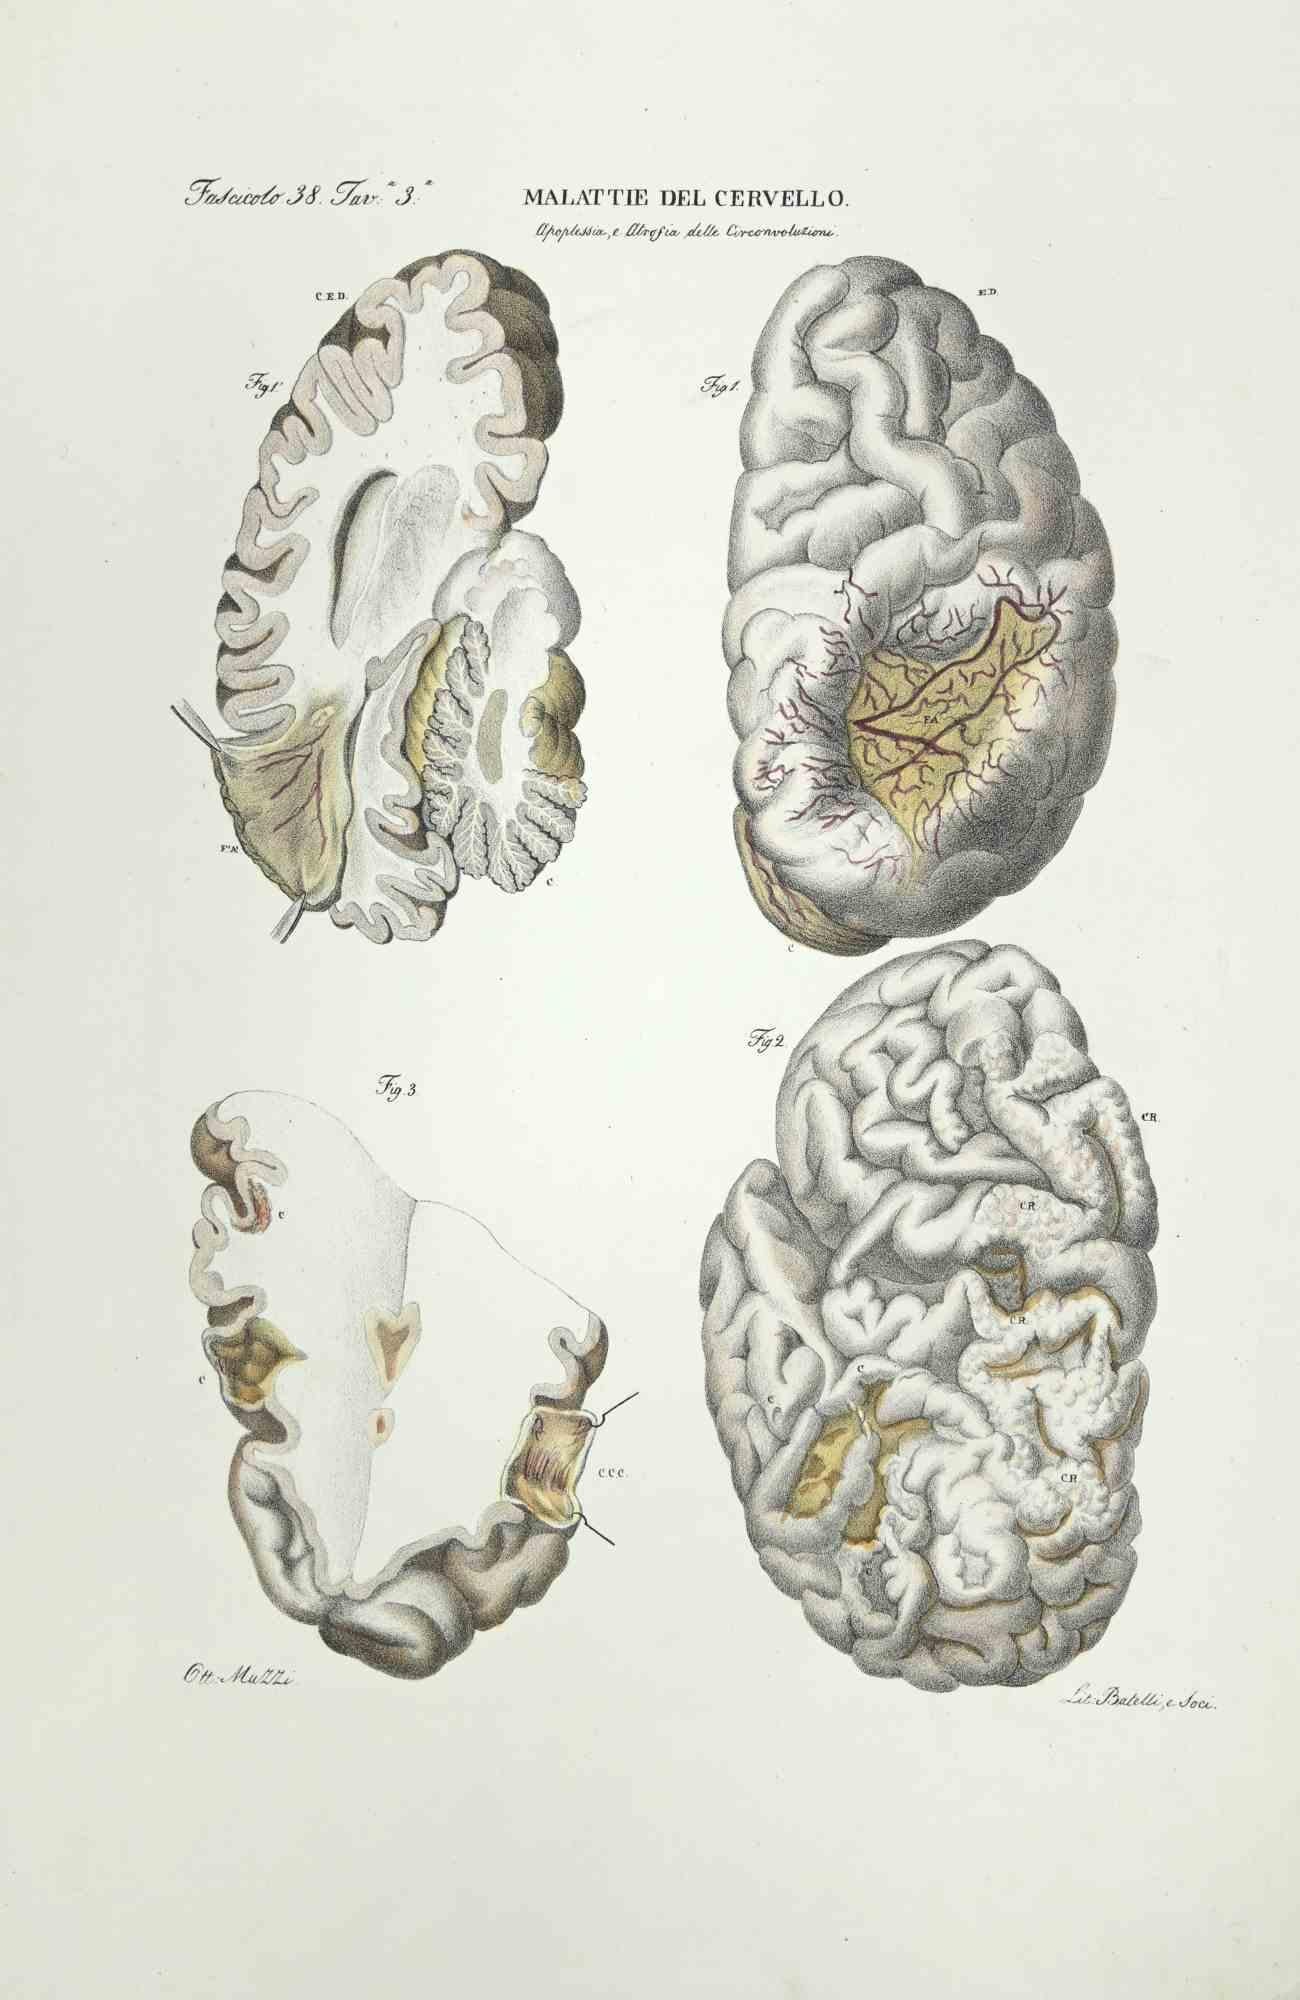 Brain Diseases ist eine handkolorierte Lithographie von Ottavio Muzzi für die Ausgabe von Antoine Chazal, Human Anatomy, Printers Batelli and Ridolfi, aus dem Jahr 1843.

Signiert auf der Platte am unteren linken Rand.

Das Kunstwerk gehört zum